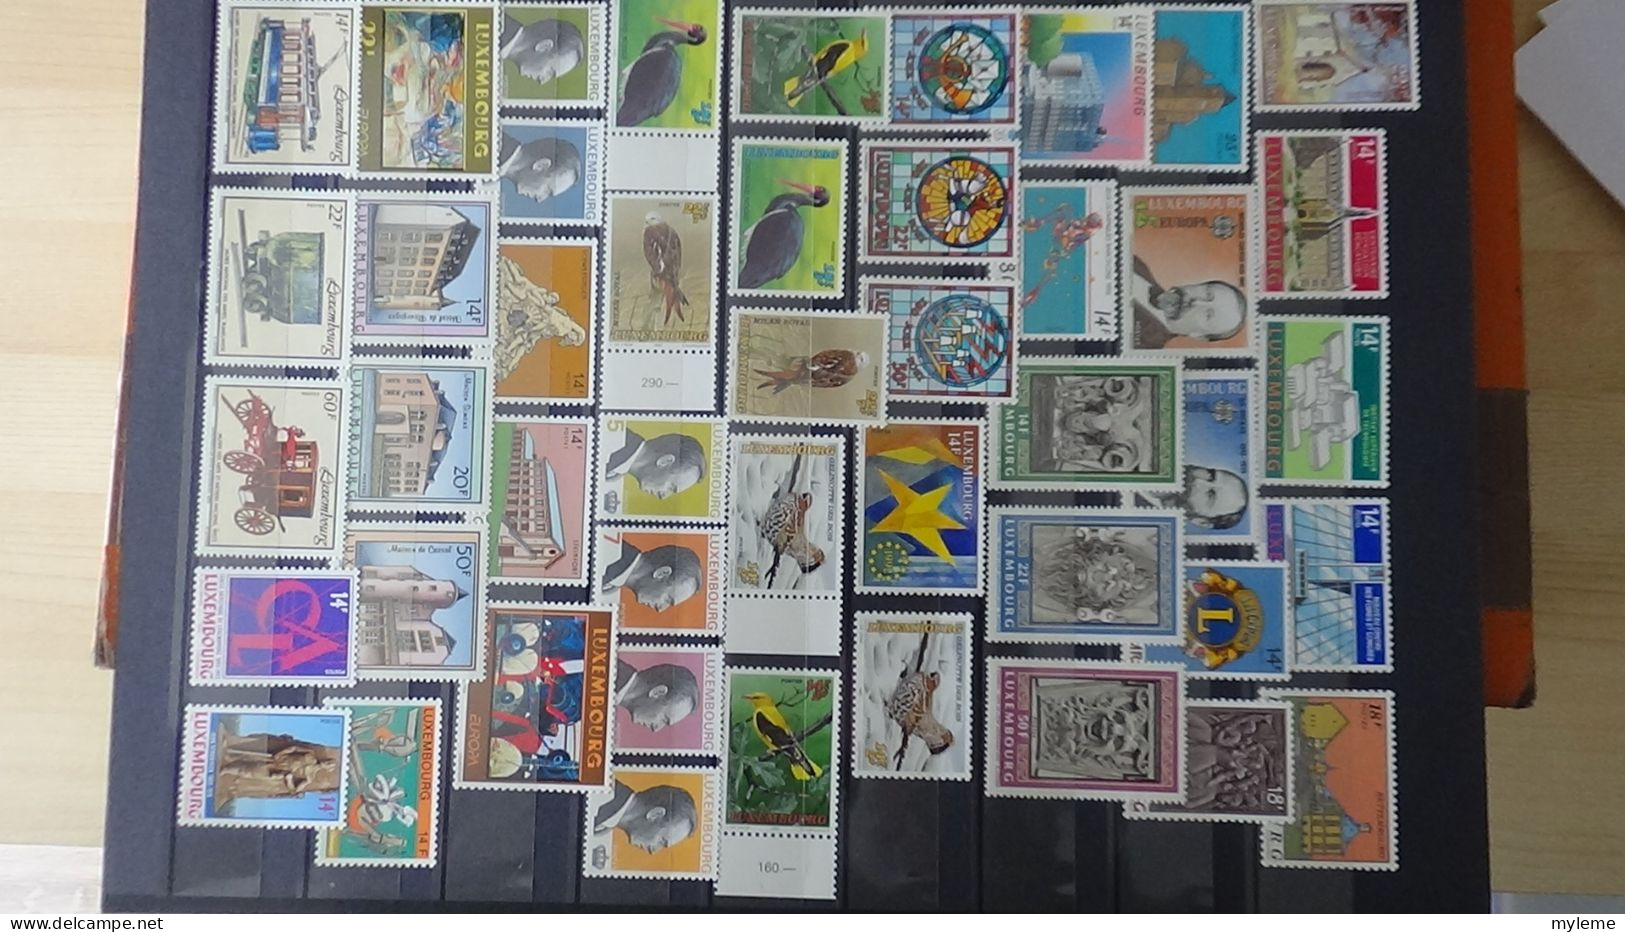 BF49 Bel ensemble de timbres de divers pays dont N° 258 + 259 + 260 ** Cote 320 euros. A saisir !!!